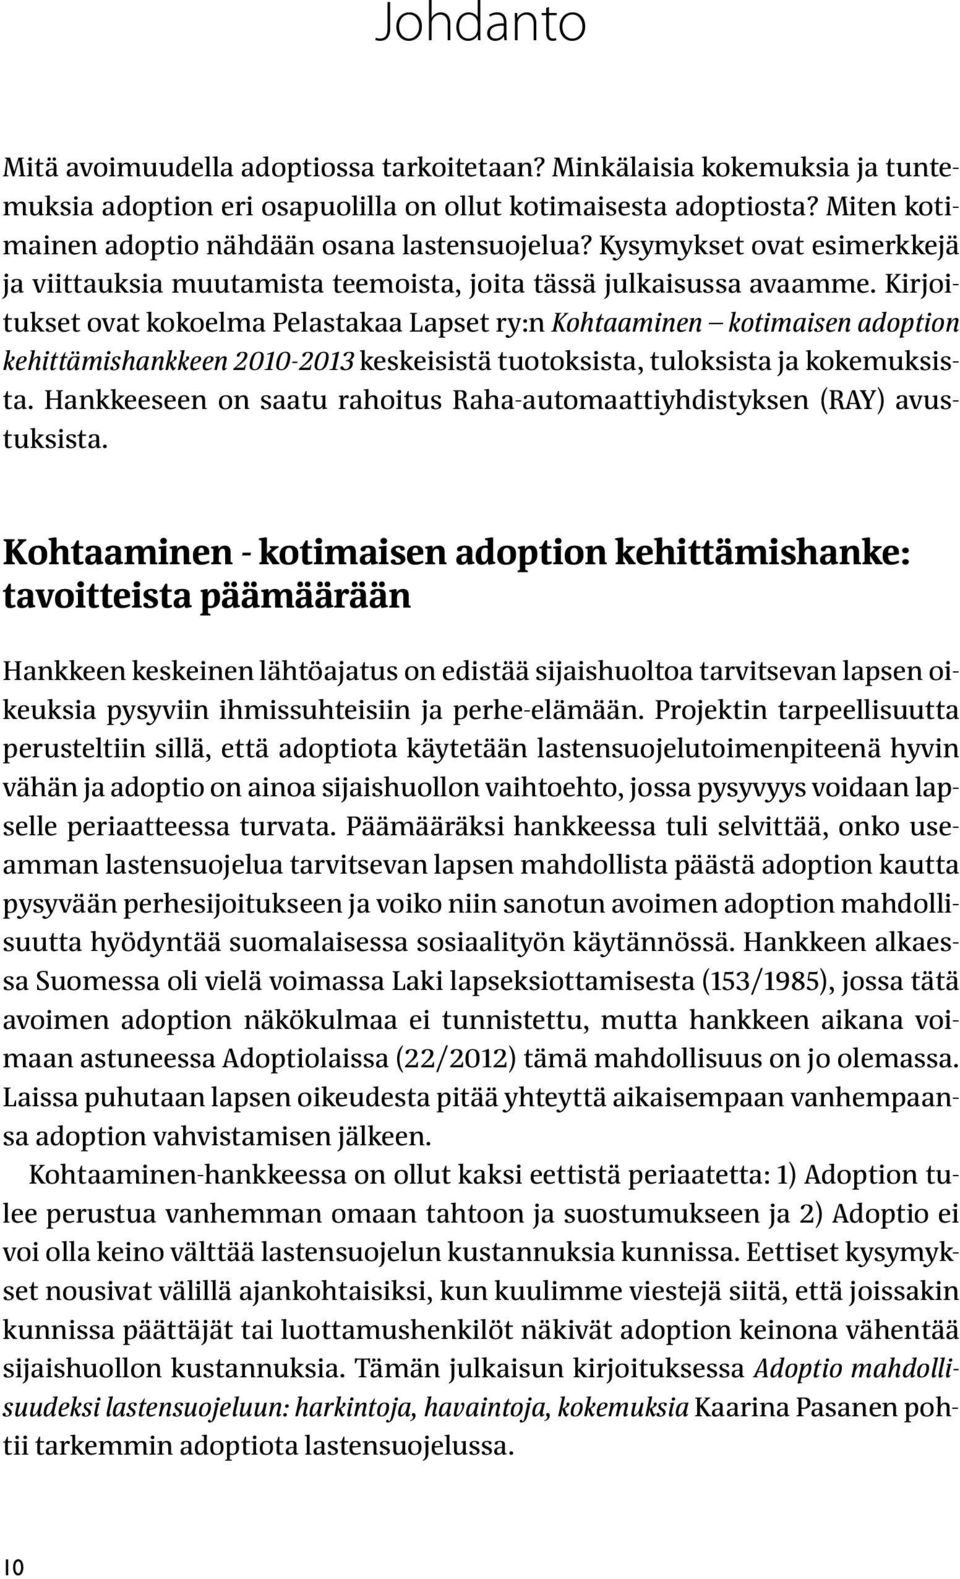 Kirjoitukset ovat kokoelma Pelastakaa Lapset ry:n Kohtaaminen kotimaisen adoption kehittämishankkeen 2010-2013 keskeisistä tuotoksista, tuloksista ja kokemuksista.